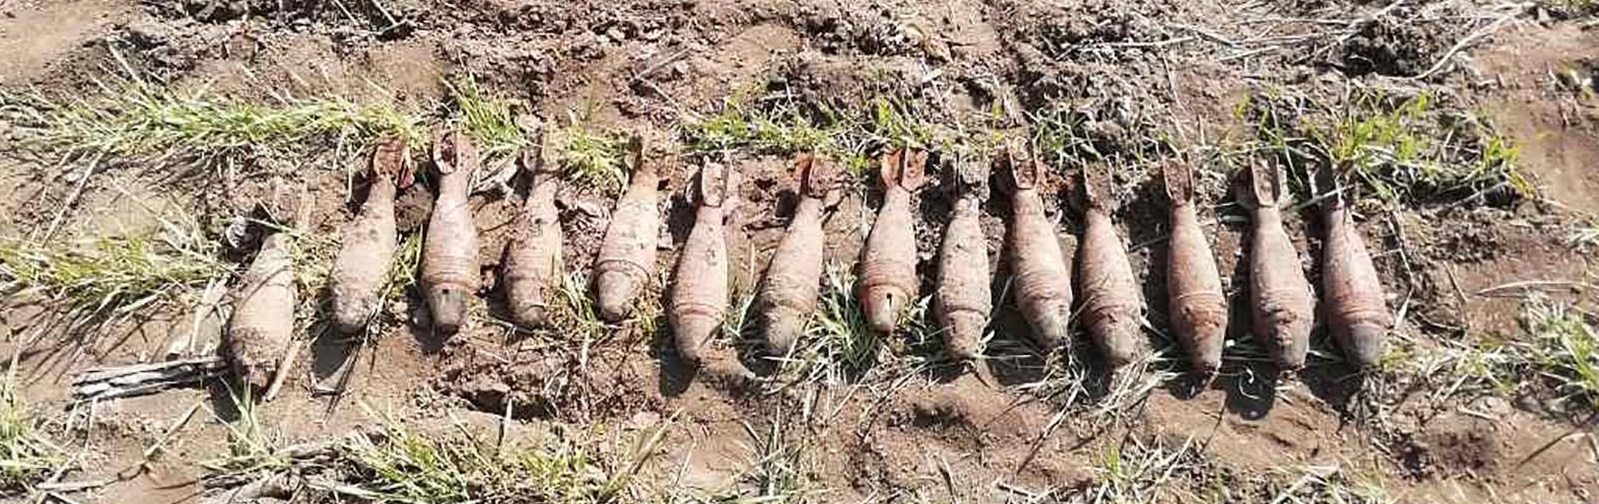 Опасная находка: житель Запорожской области обнаружил 14 минометных мин - ФОТО